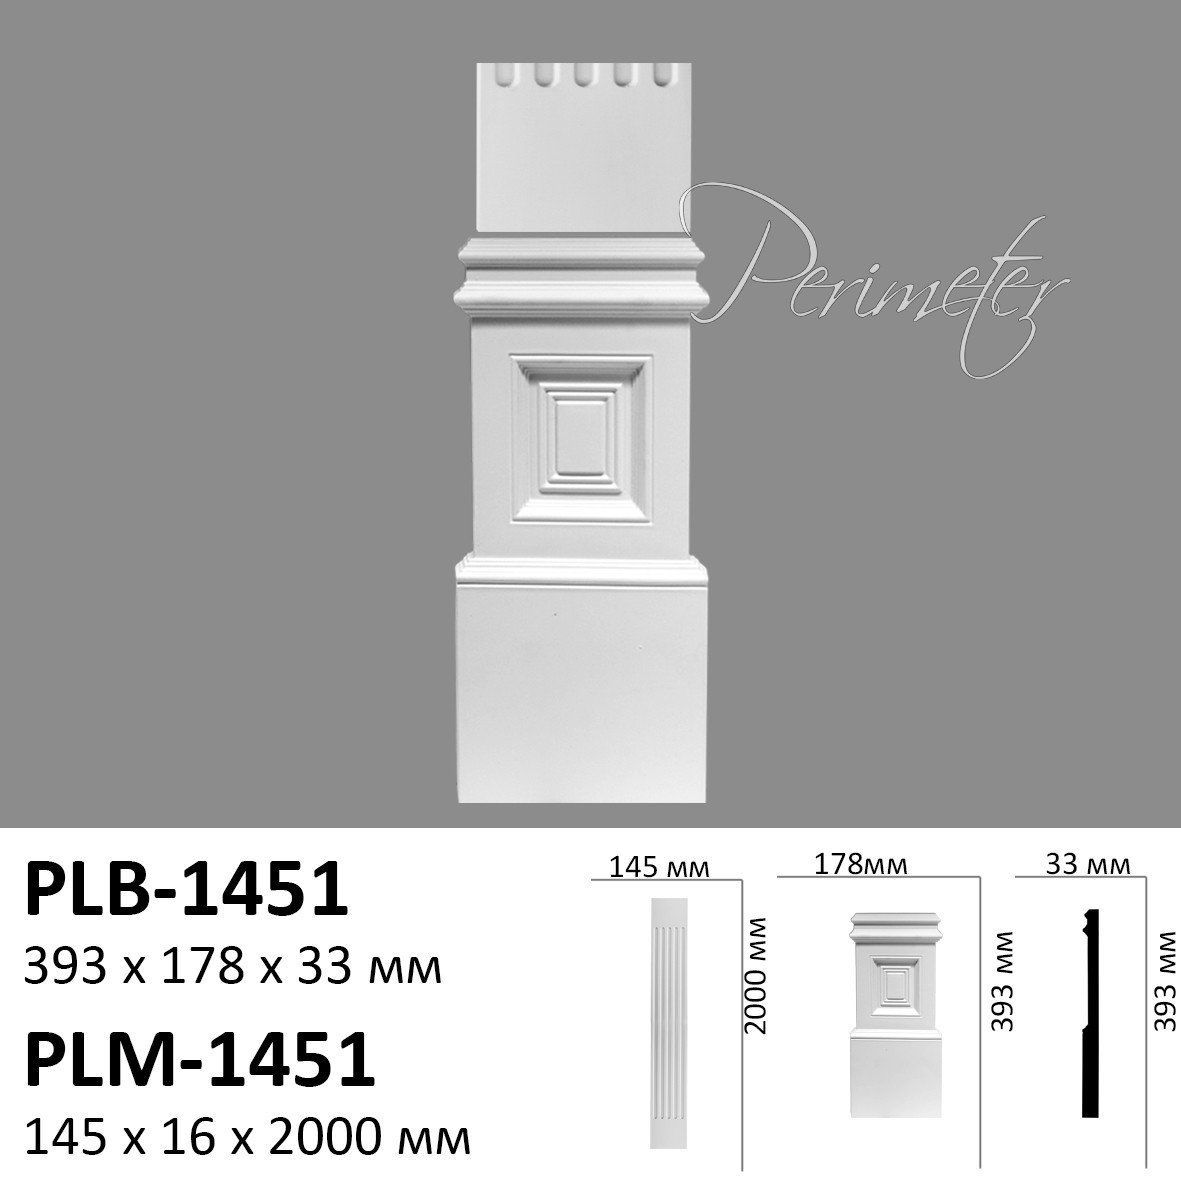 Пілястра Perimeter PLM-1451